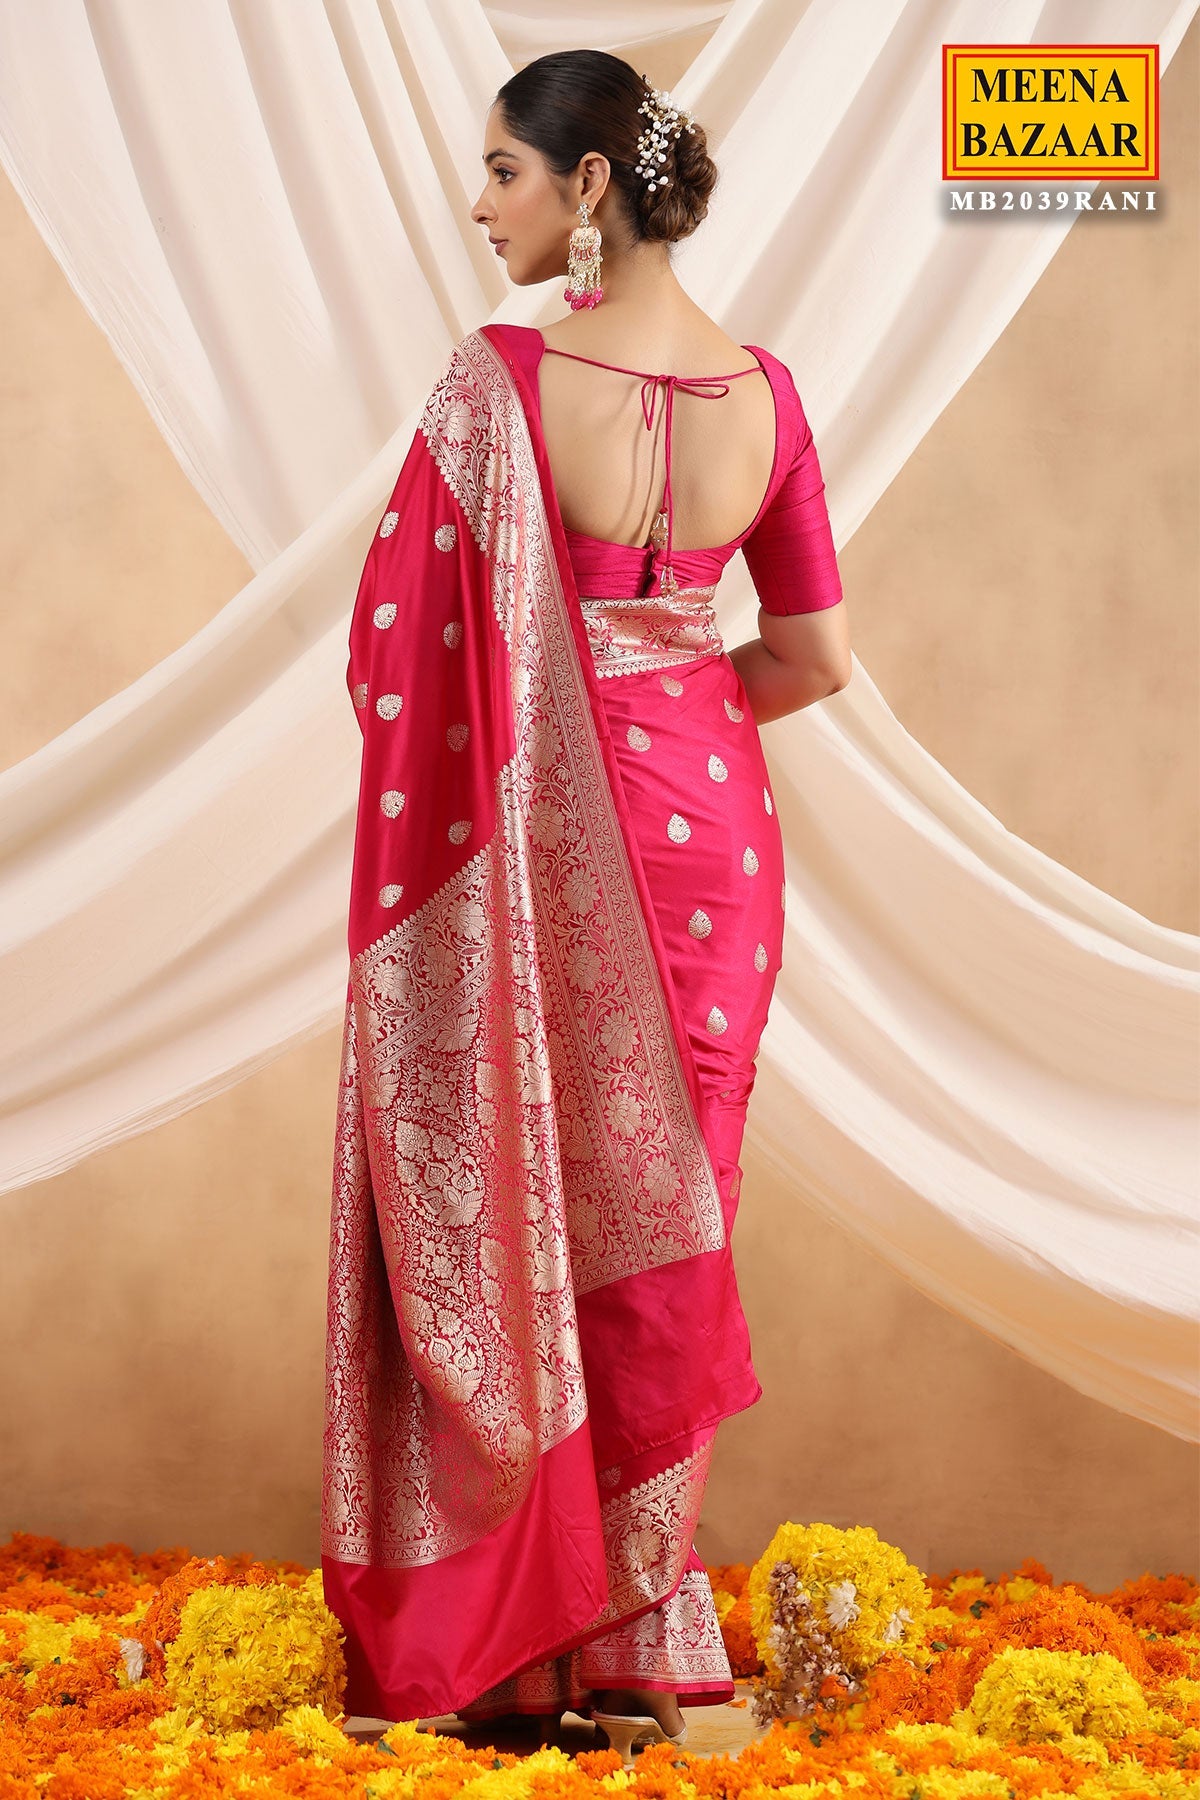 Meena Bazaar | Saraswatichandra | Indian ethnic wear, Indian beauty saree,  Indian fashion